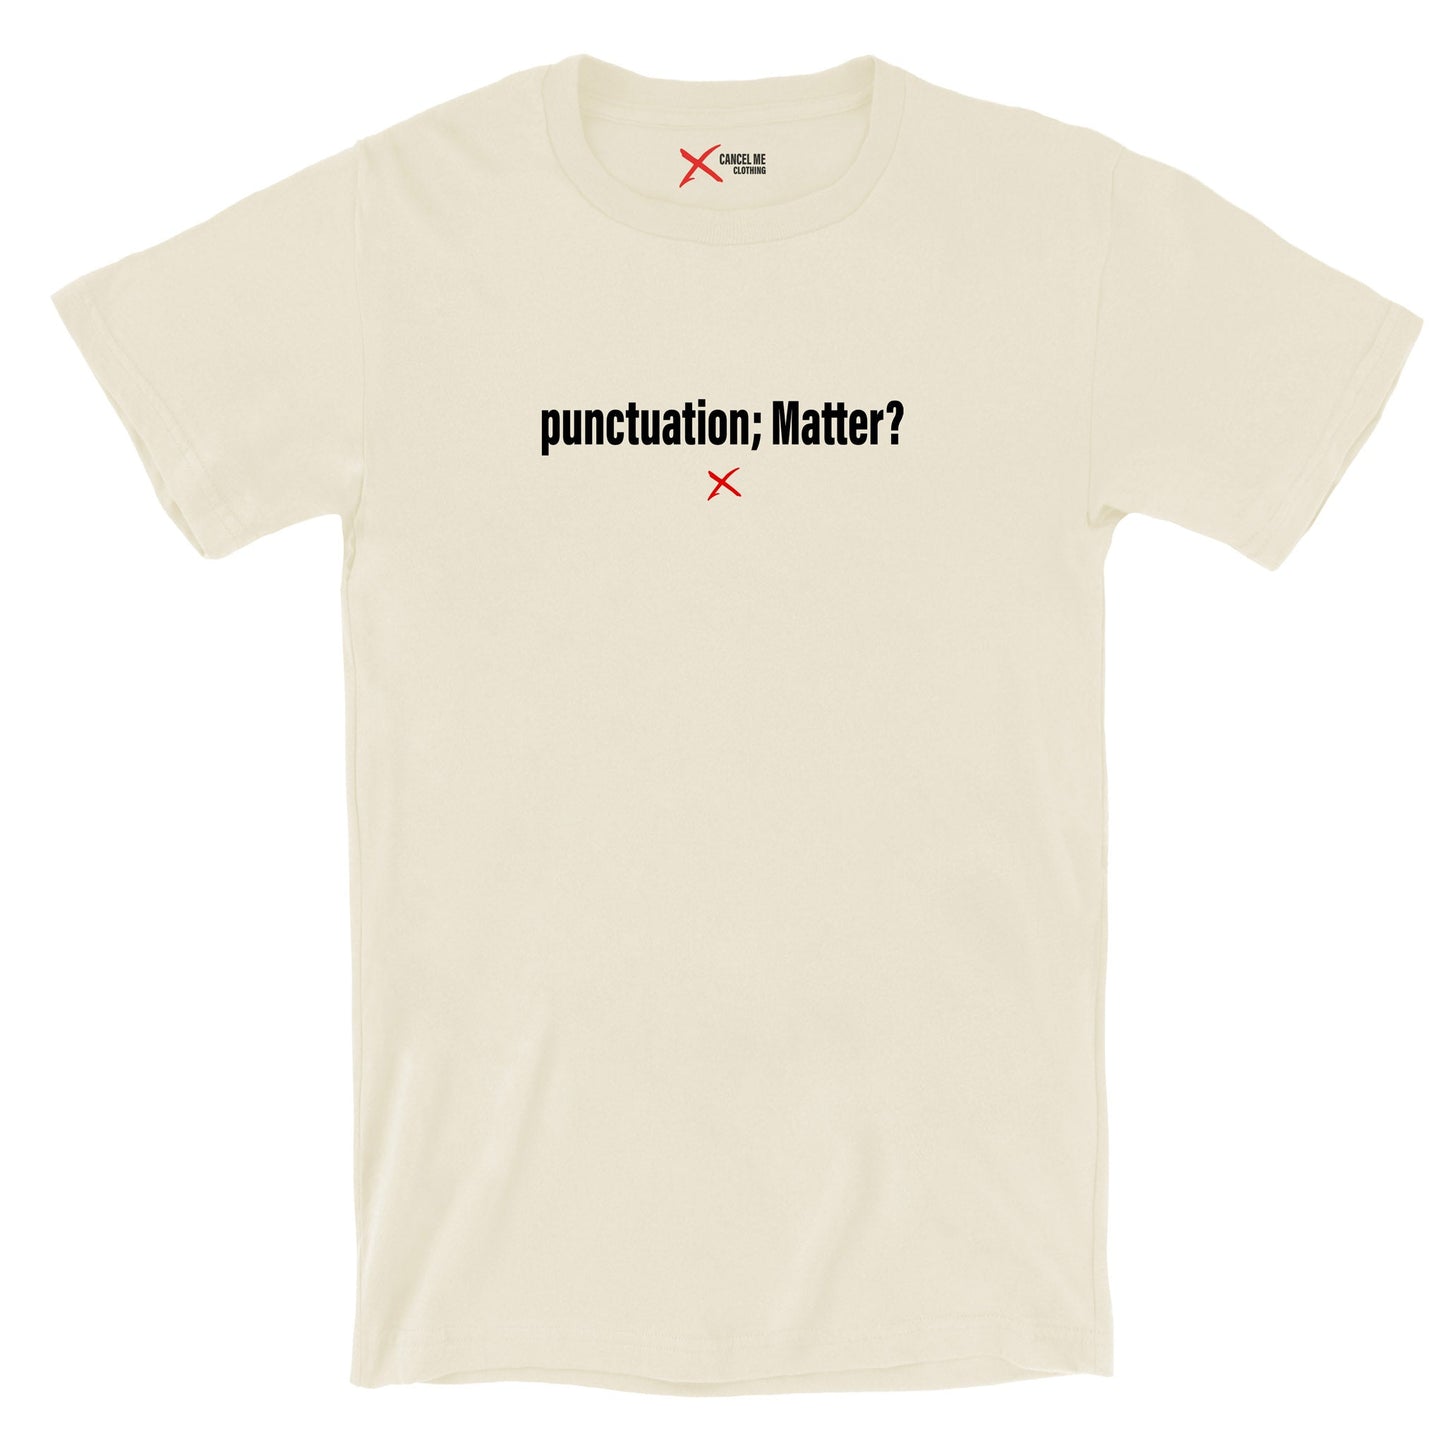 punctuation; Matter? - Shirt